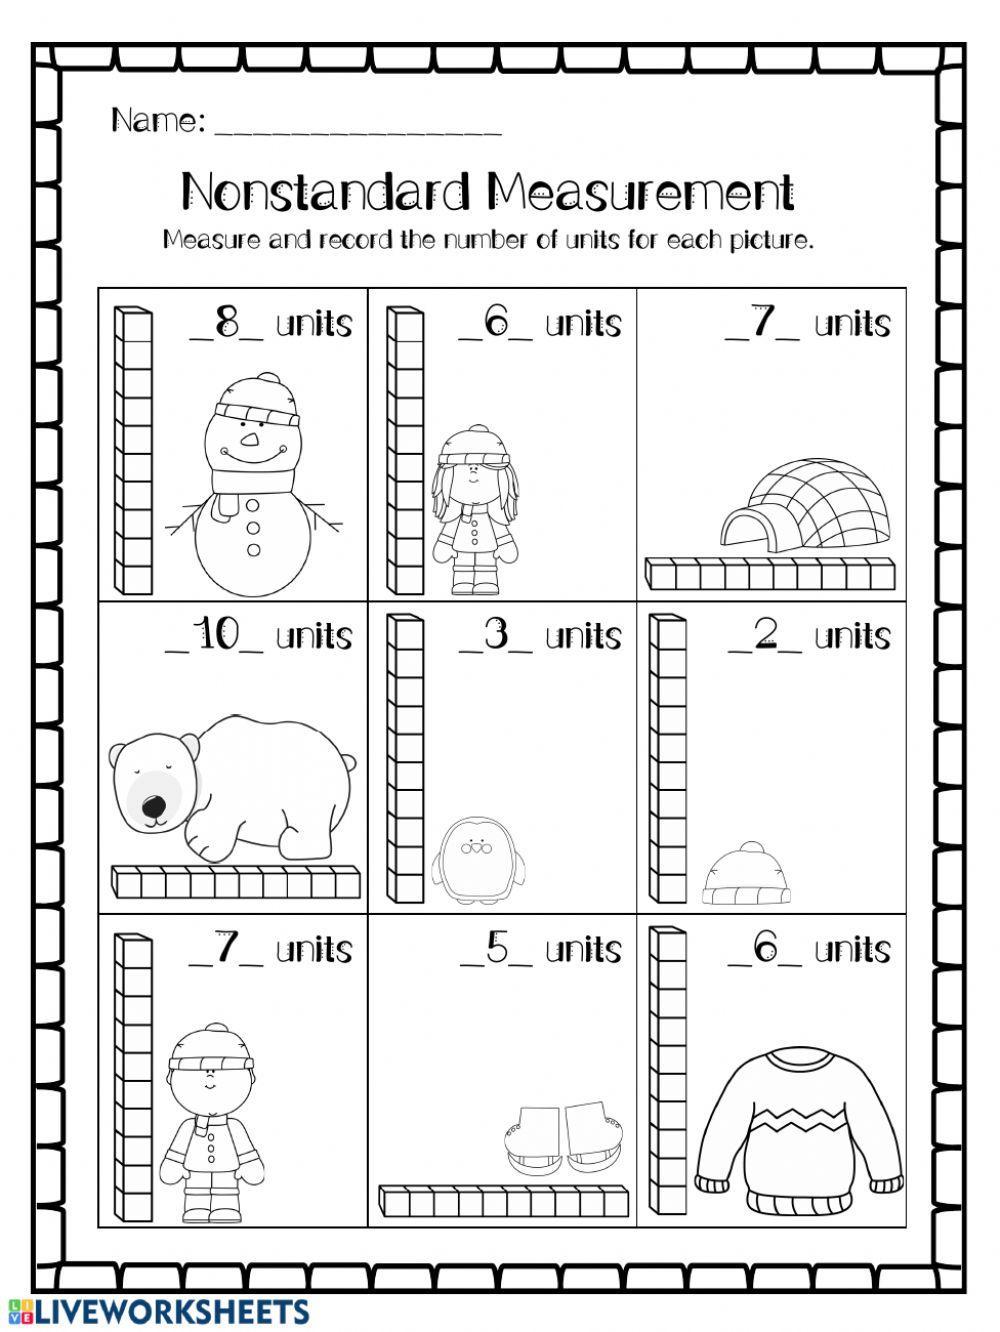 Non-standard unit Measurement